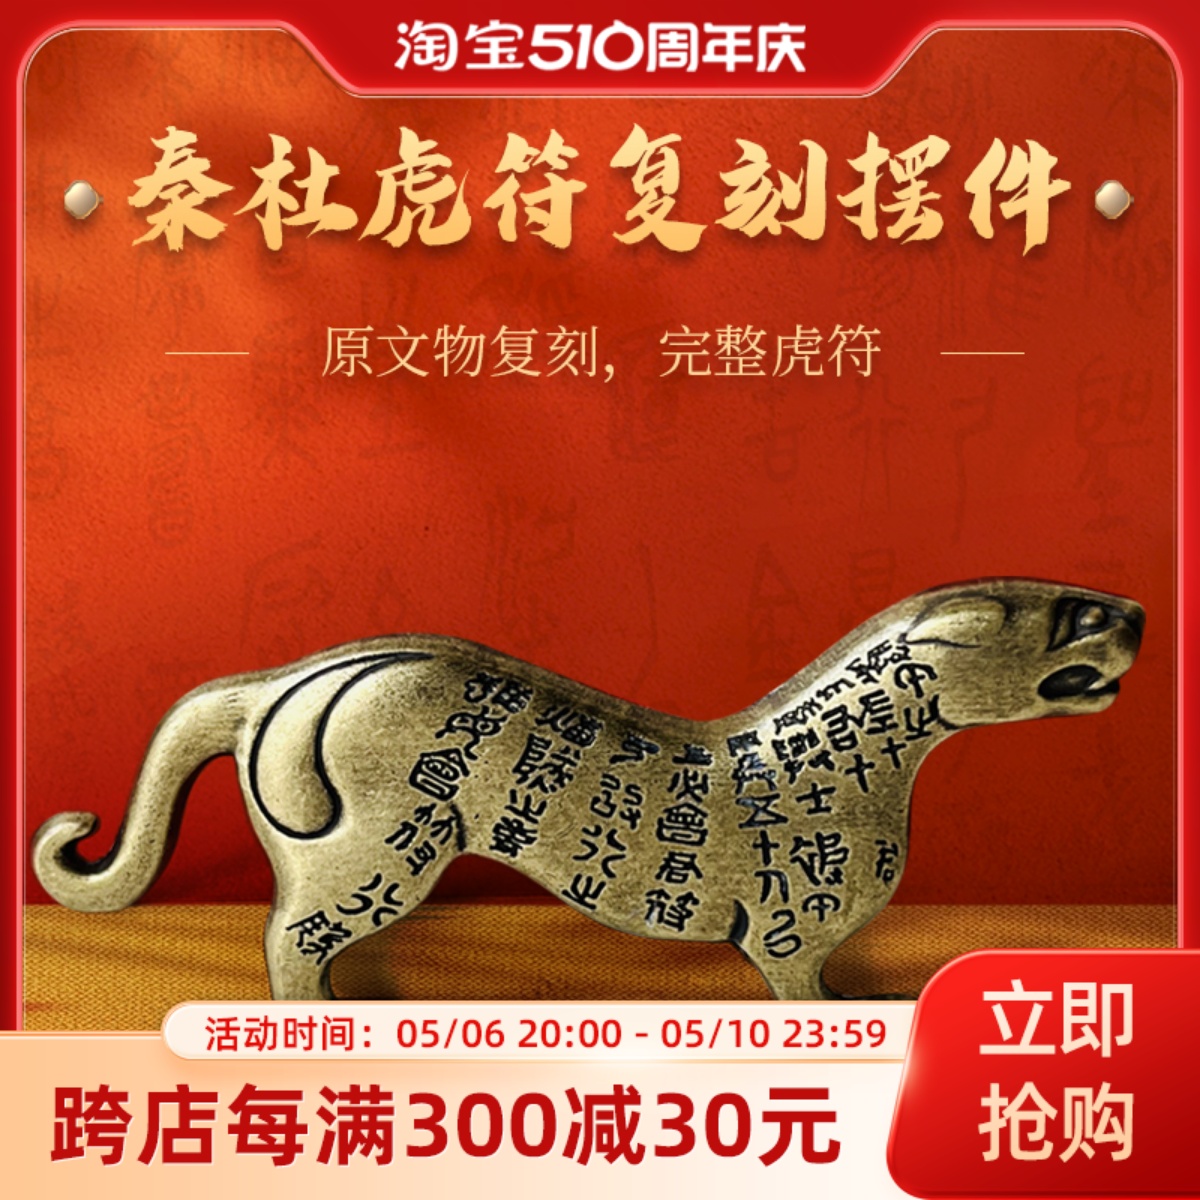 西安文化创意纪念品杜虎符复刻摆件青铜做旧工艺陕西历史博物馆